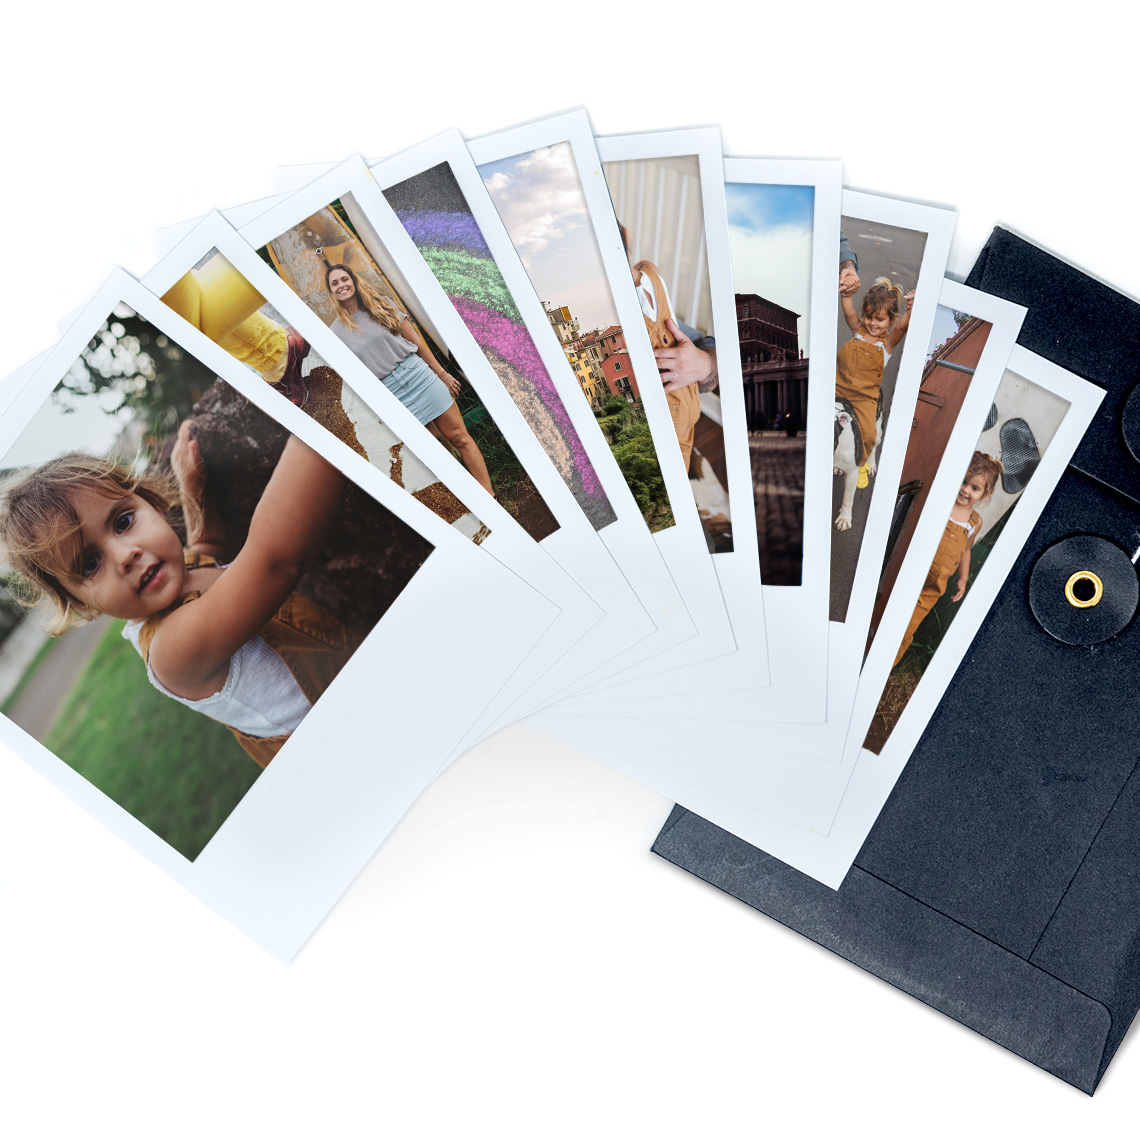 Stampe Foto Mini: Un modo figato per stampare foto